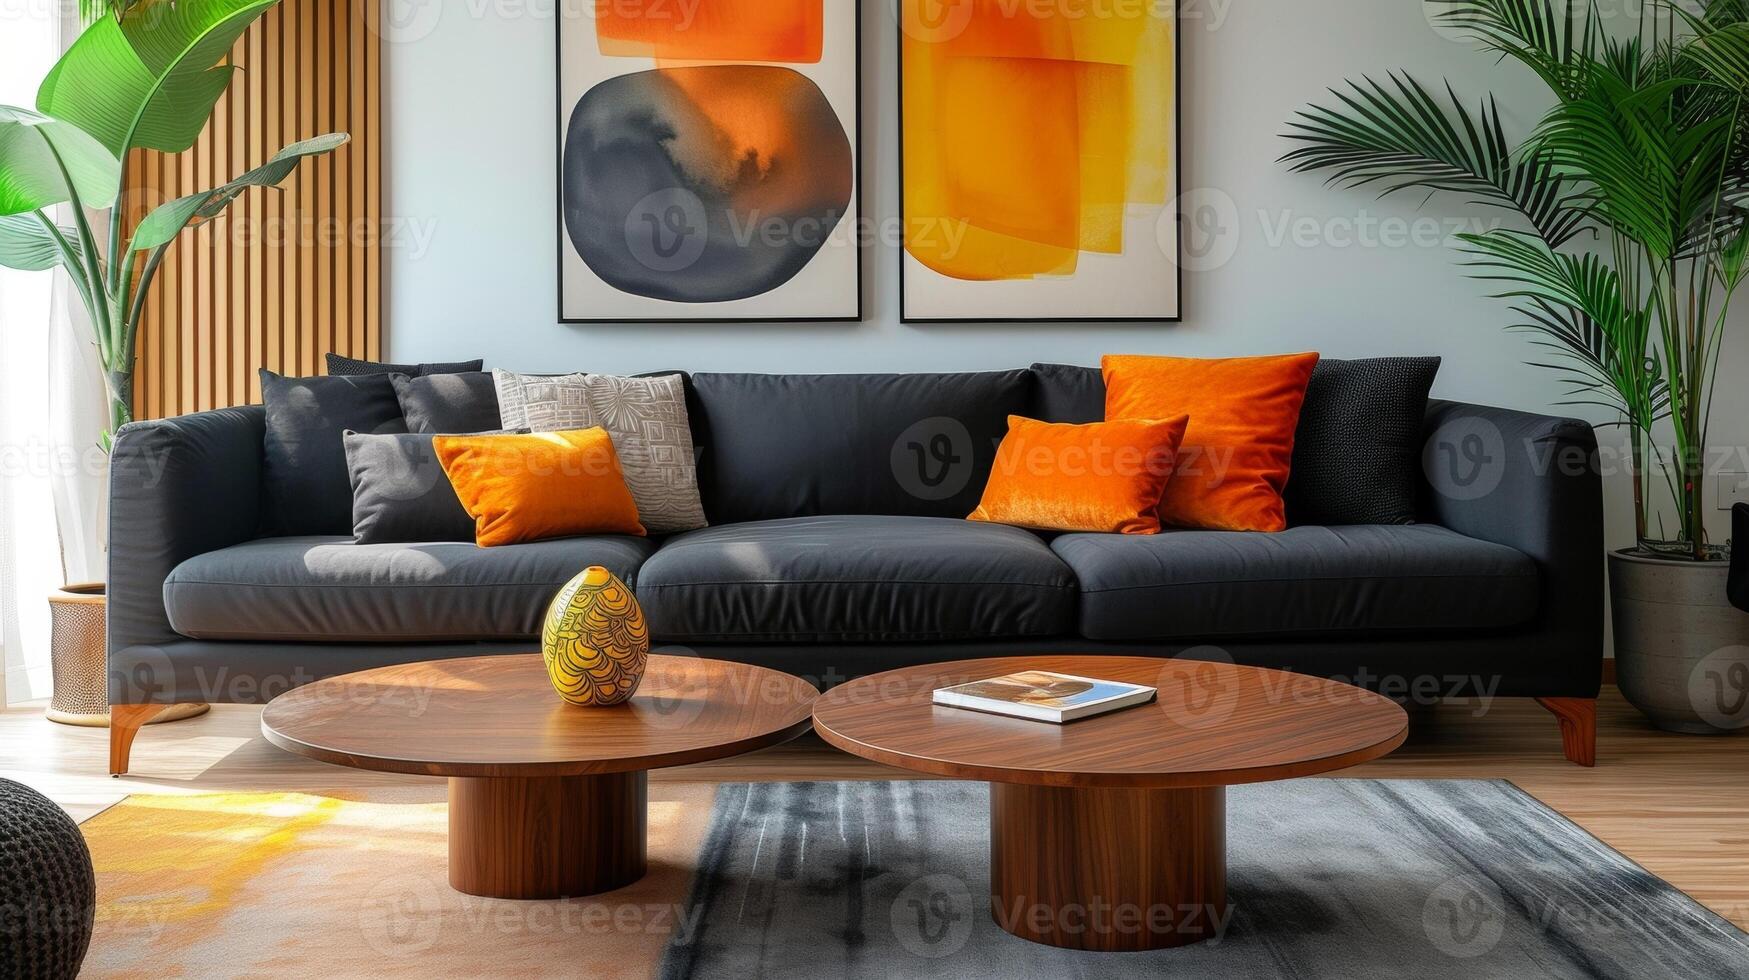 uma moderno vivo quarto com uma lustroso Preto sofá uma minimalista de madeira café mesa e uma poucos negrito arte peças mostrando este aposentadoria vivo pode estar à moda e simplificado sagacidade foto